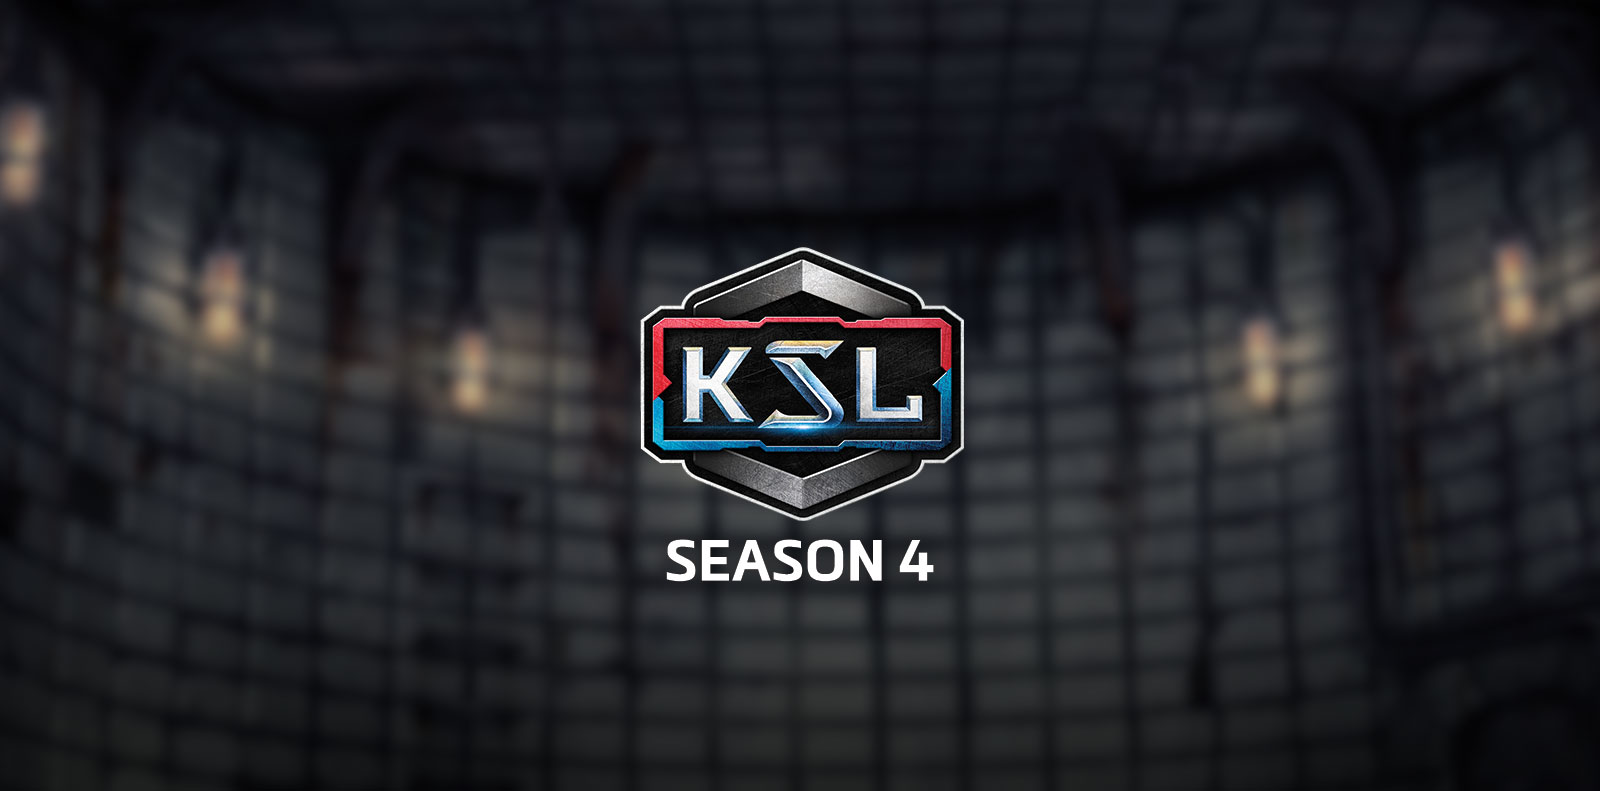 KSL Season 4 is here!